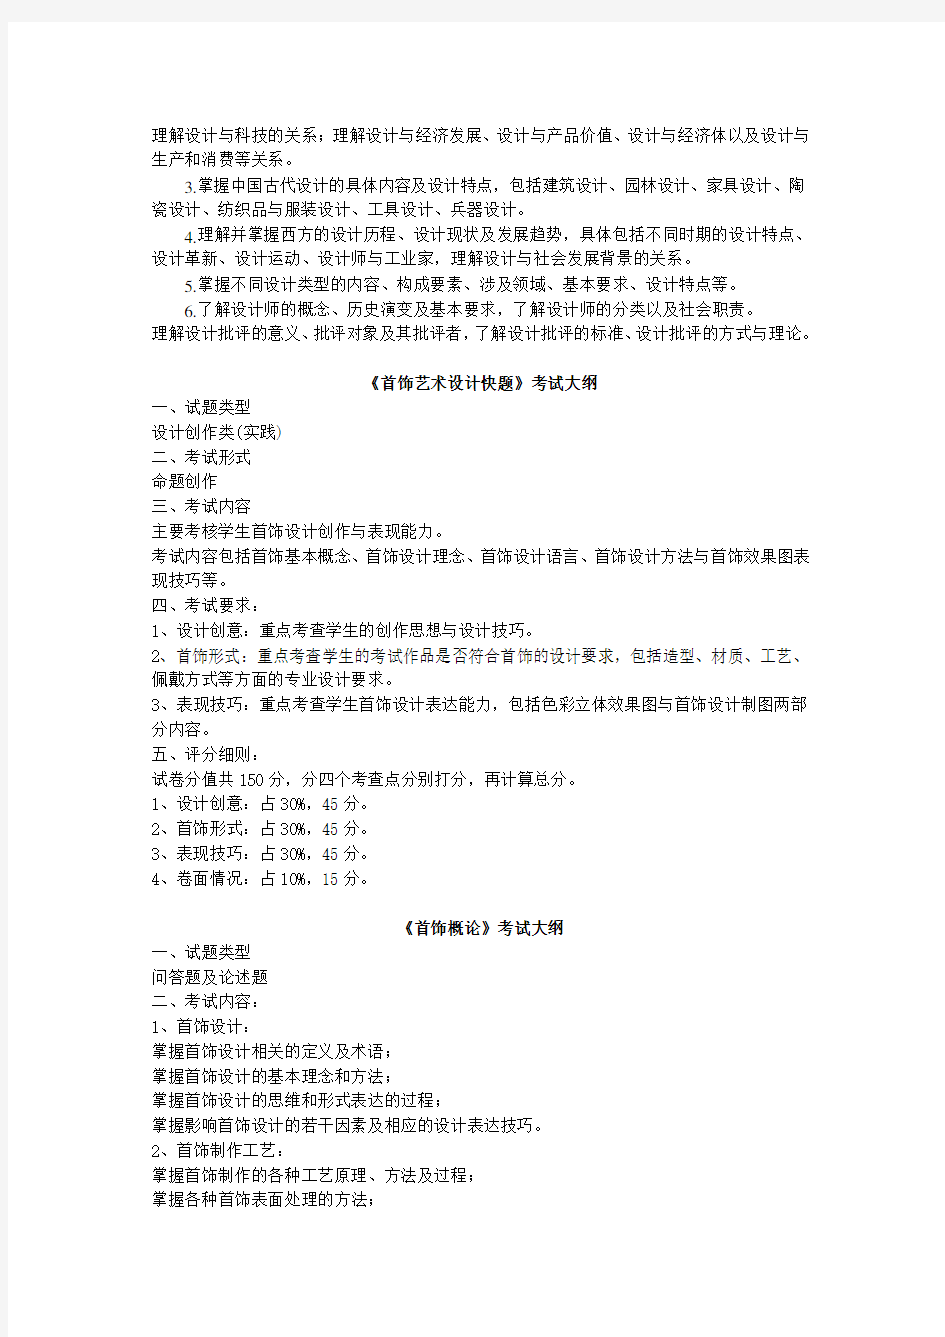 2020年中国地质大学(武汉)珠宝学院2020年研究生入学考试大纲